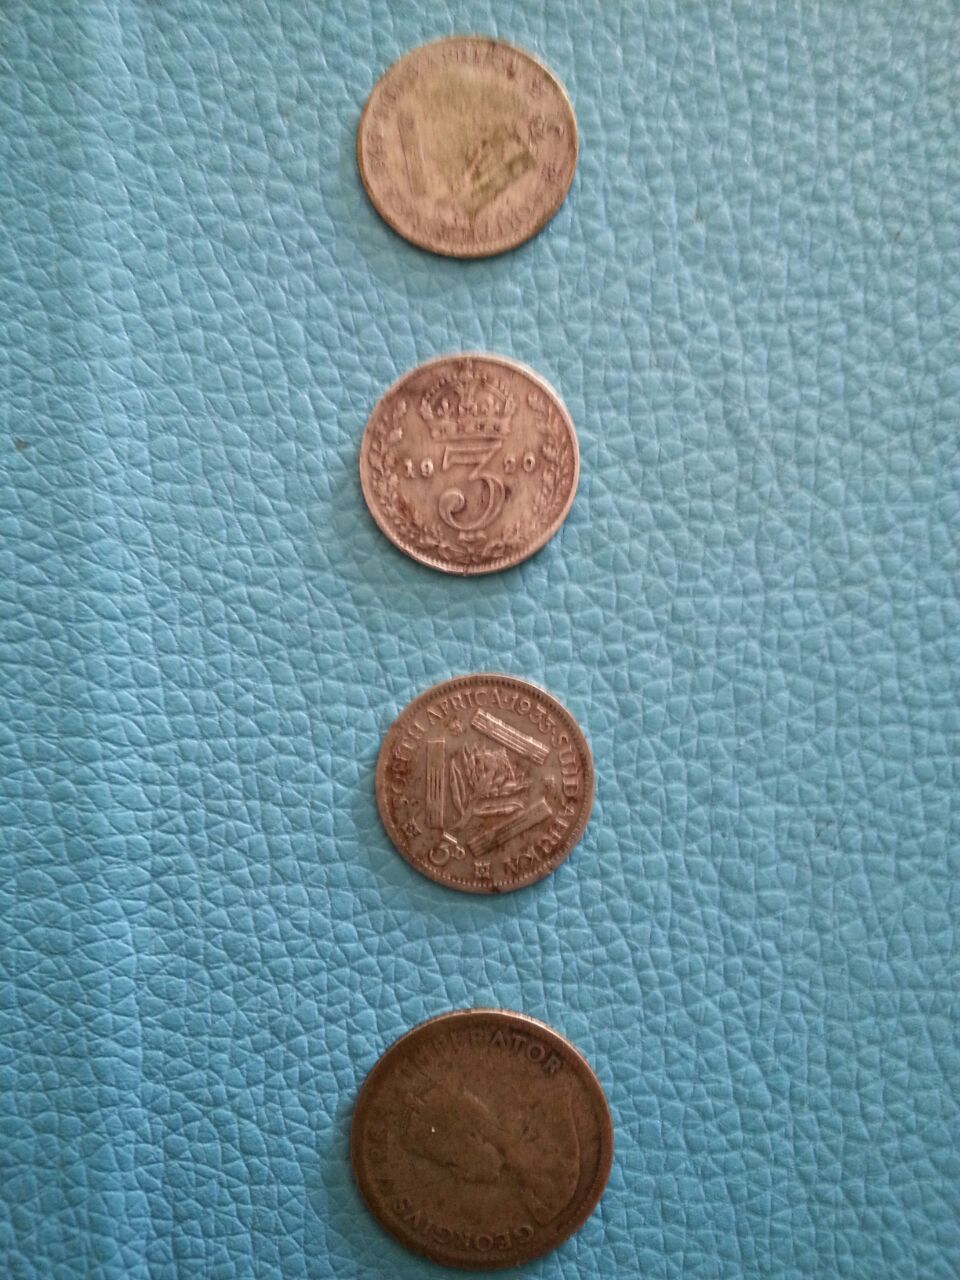 coins 1.jpg